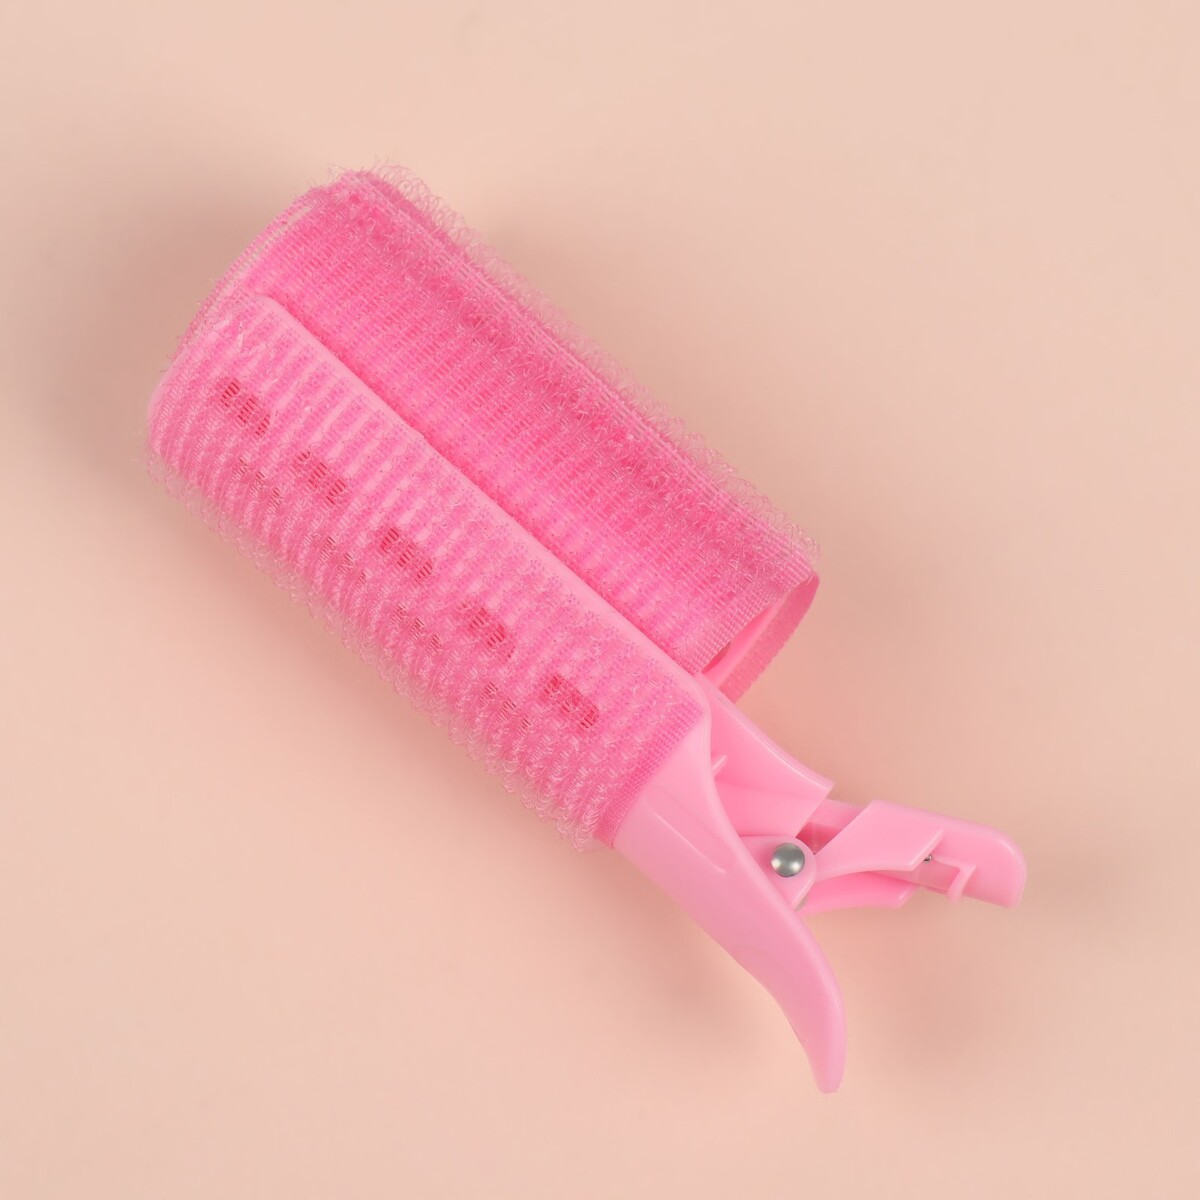 фото Бигуди для челки, с зажимом, d = 3,5 см, 11 см, цвет розовый queen fair